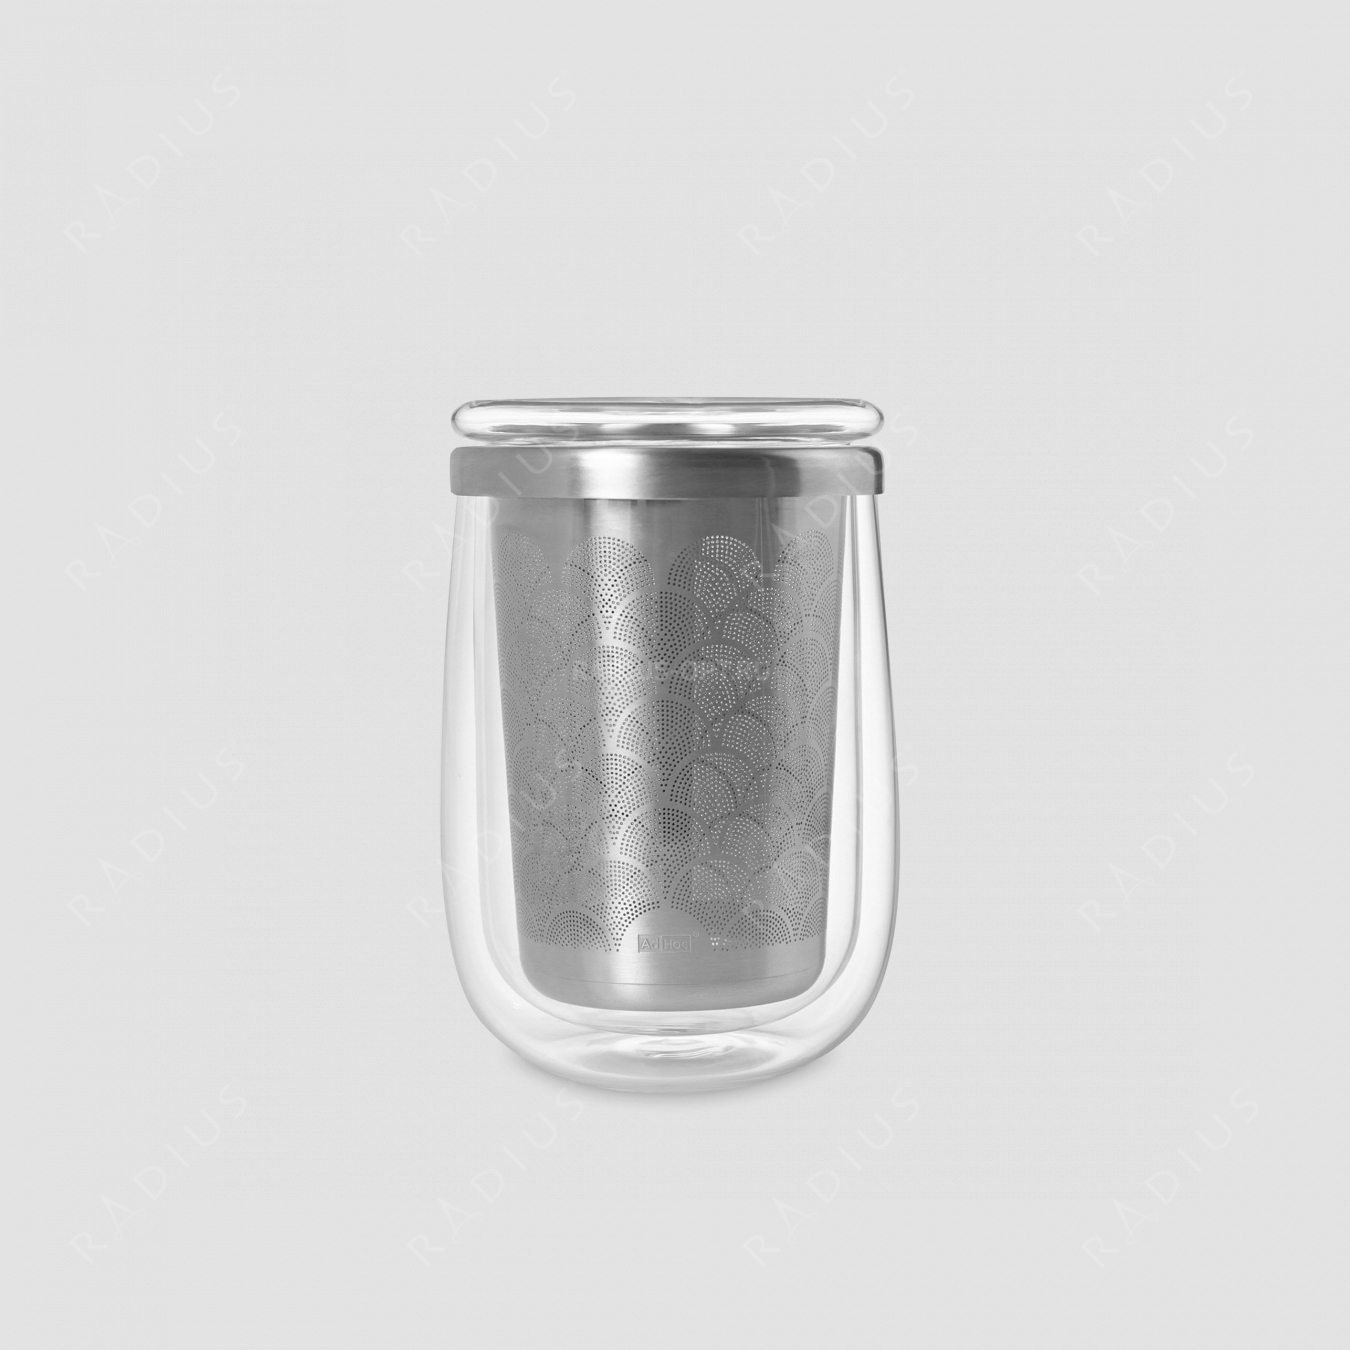 Термобокал для заваривания чая с ситечком и с крышкой, FUSION GLASS, объем 400 мл, серия Fusion Glass, ADHOC, Германия